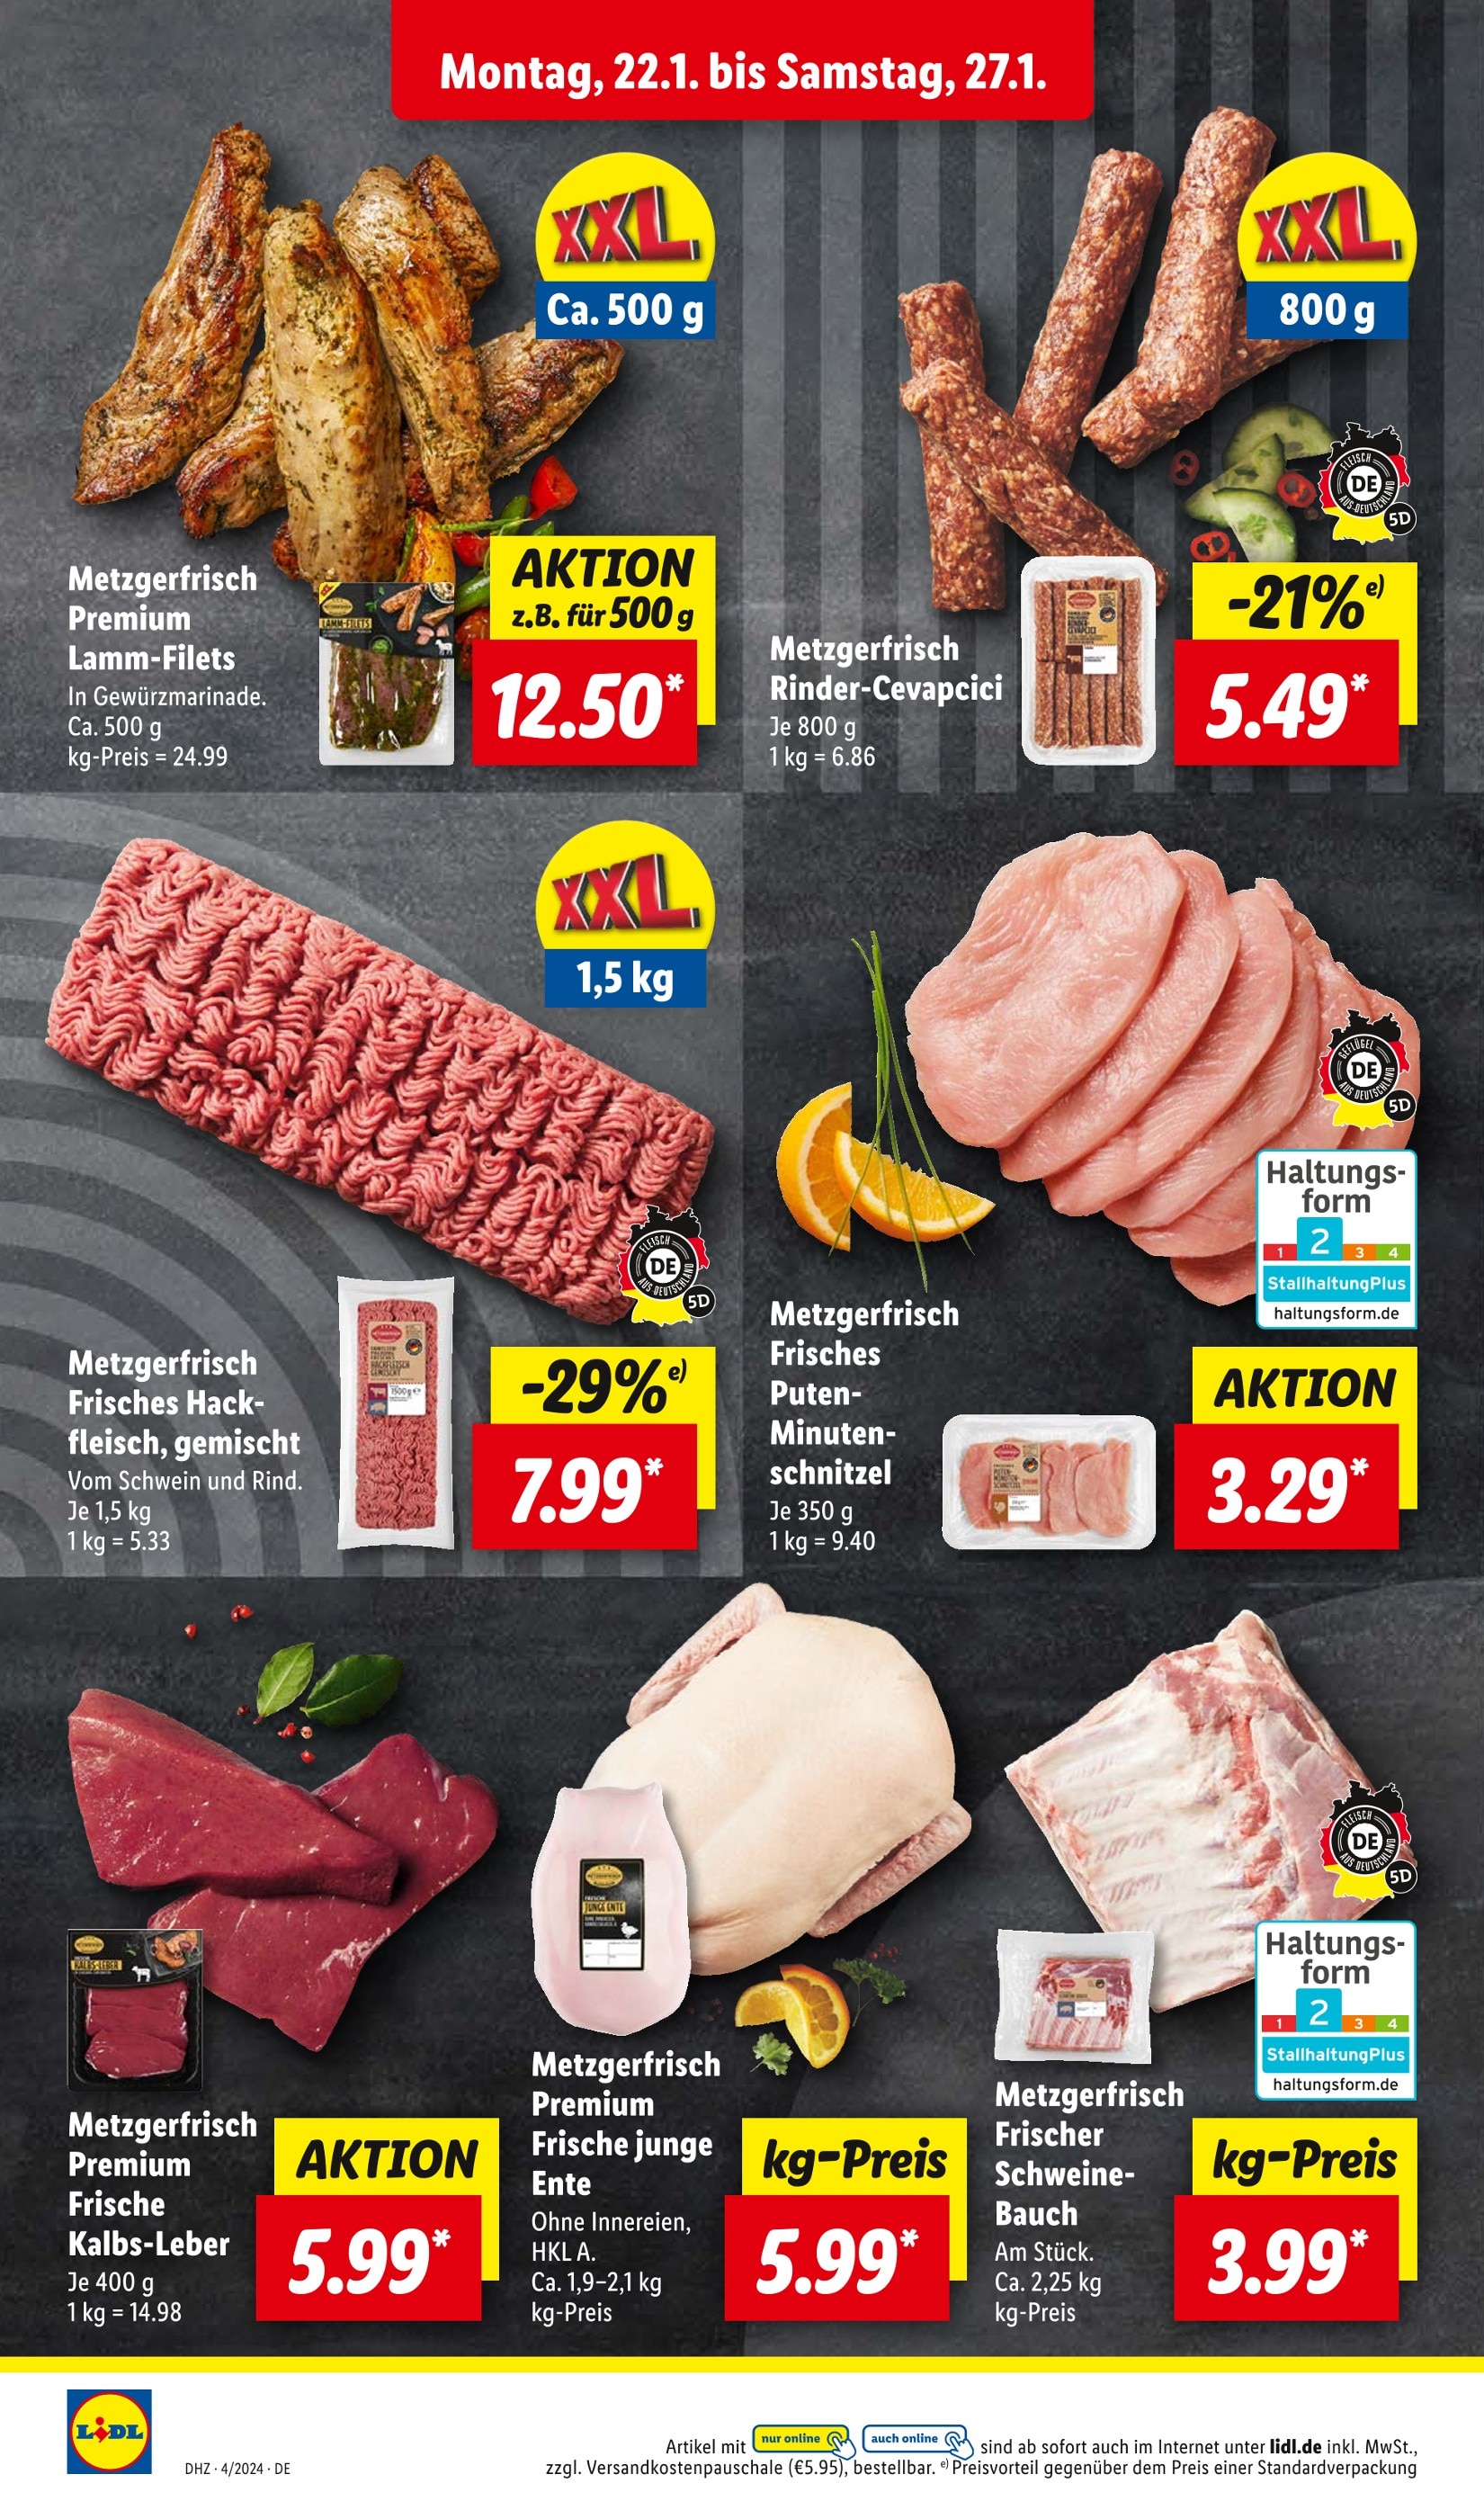 Schweinebauch kaufen in Görlitz Görlitz günstige - Angebote in